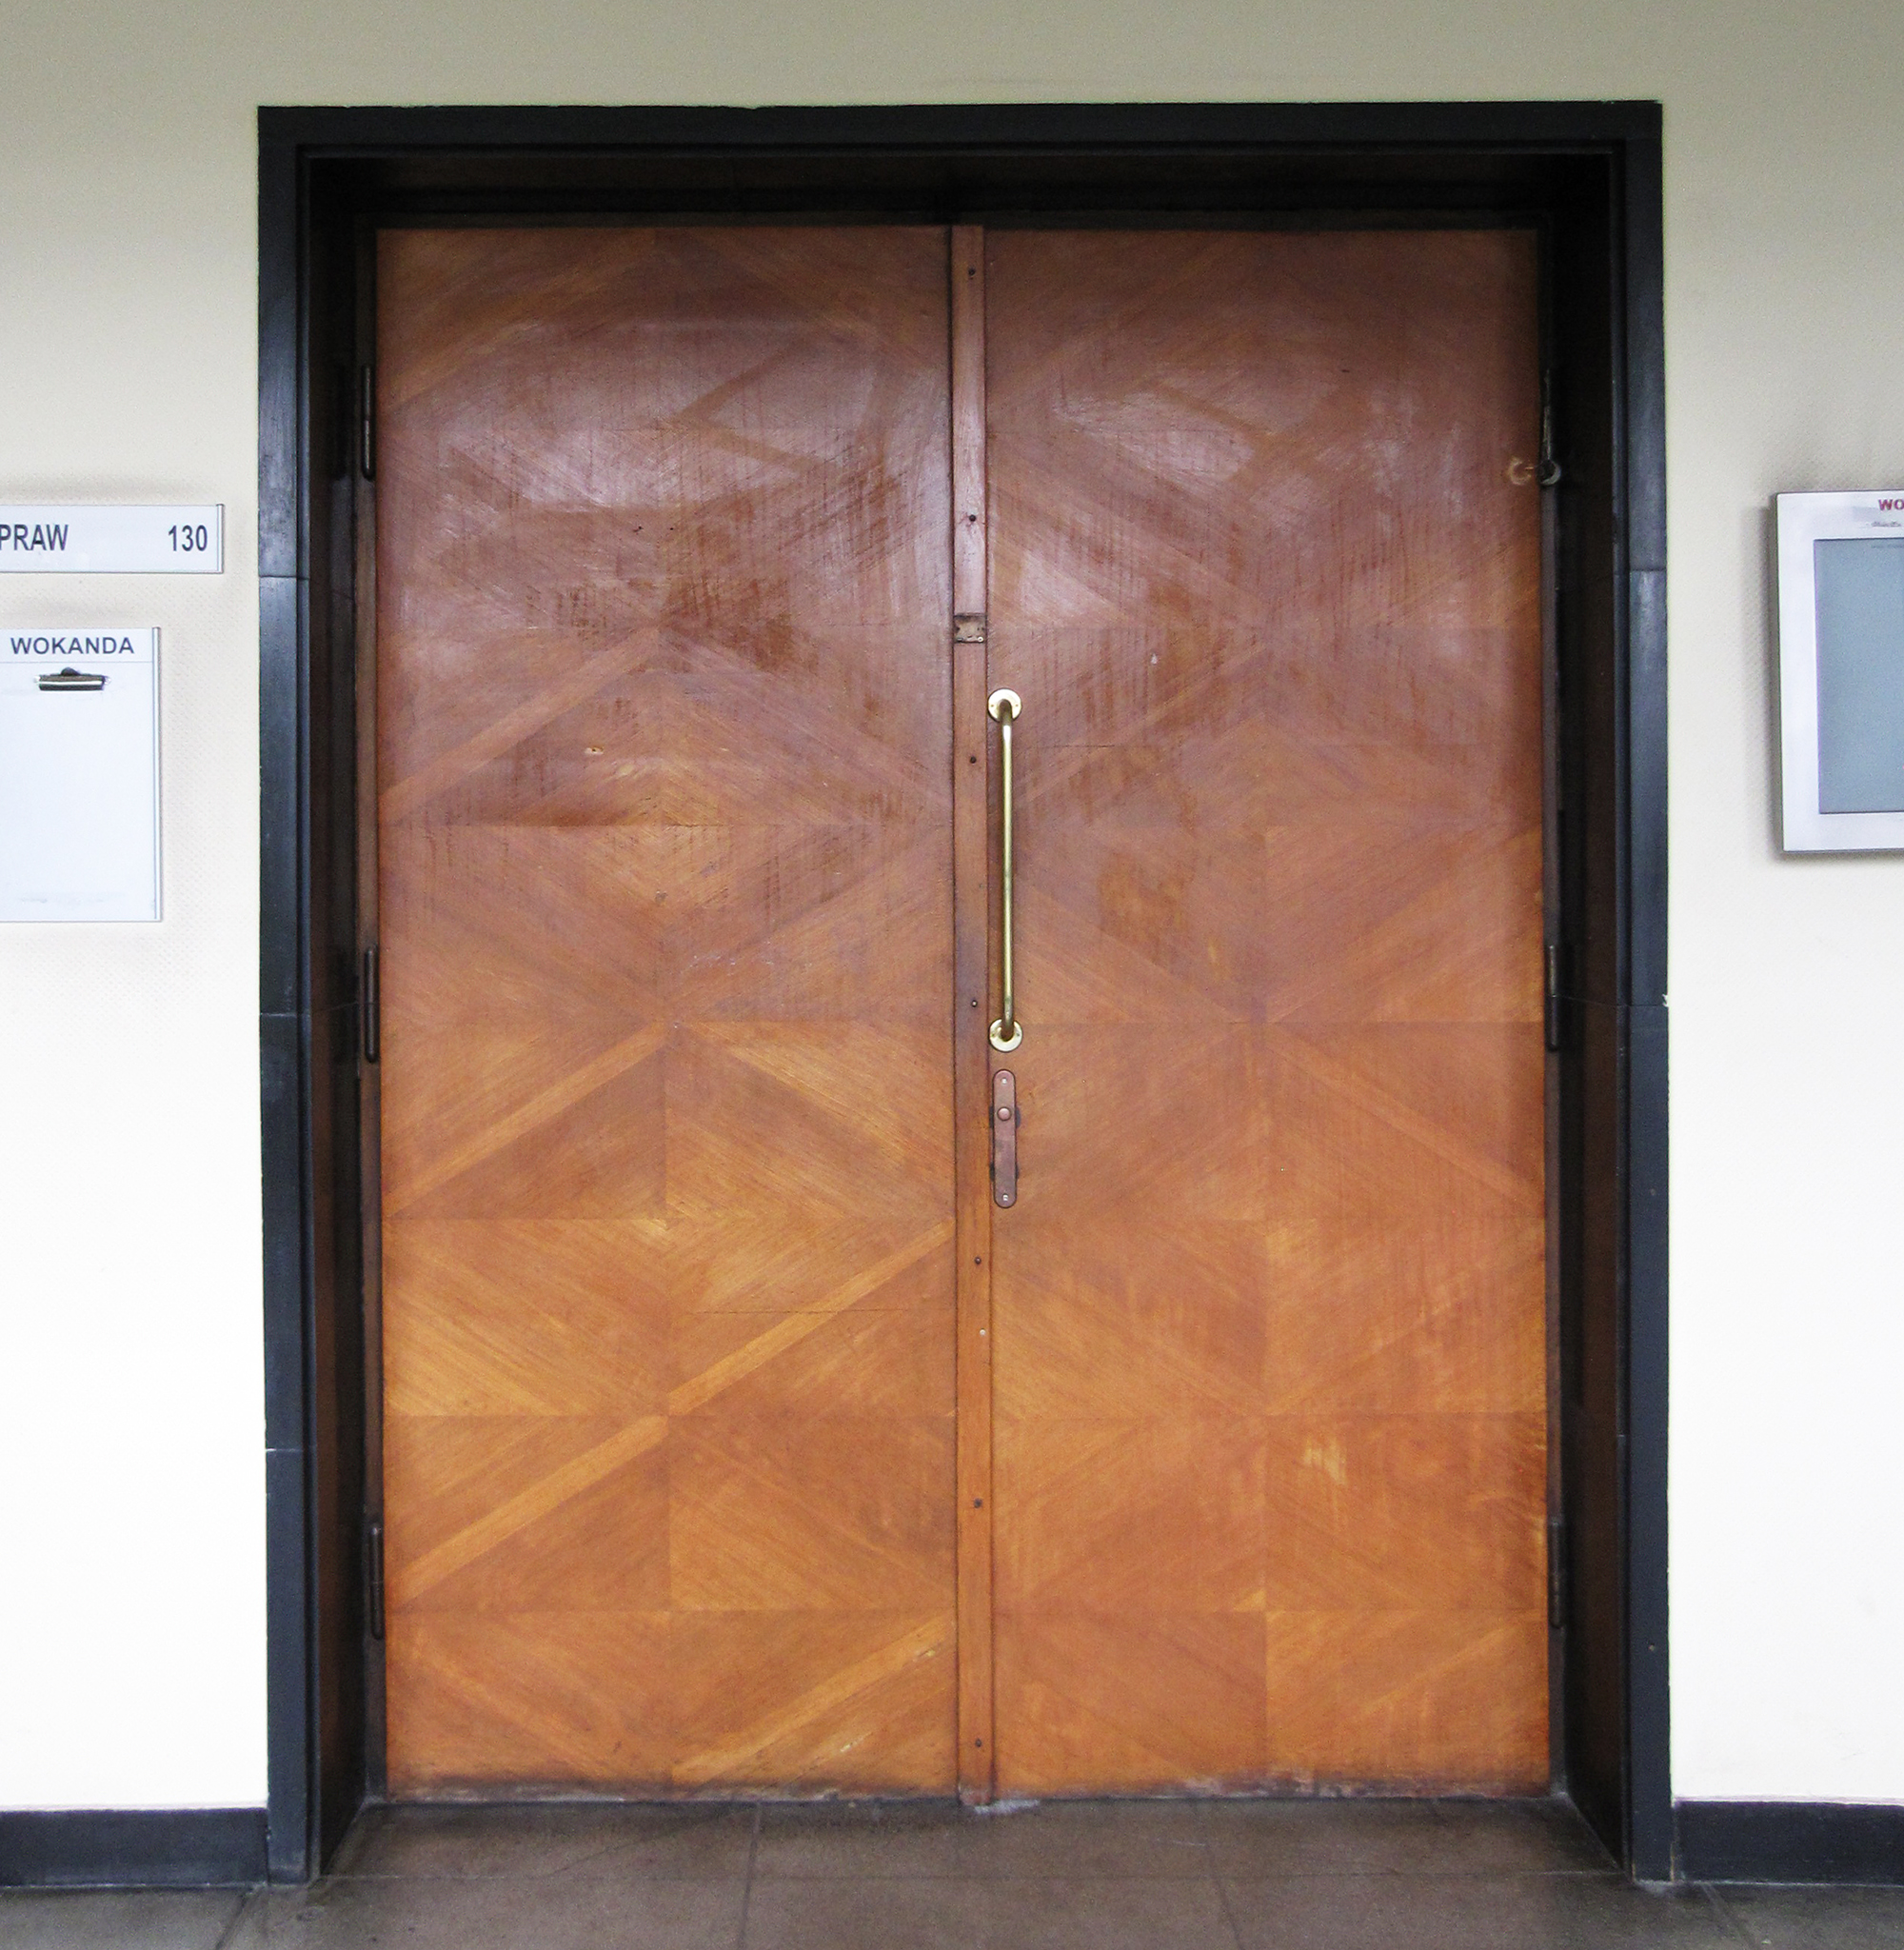 Płytowe drzwi z dekoracją rombów ułożonych ze słojów drewna, sala rozpraw w budynku Sądu Rejonowego, Pl. Konstytucji 5